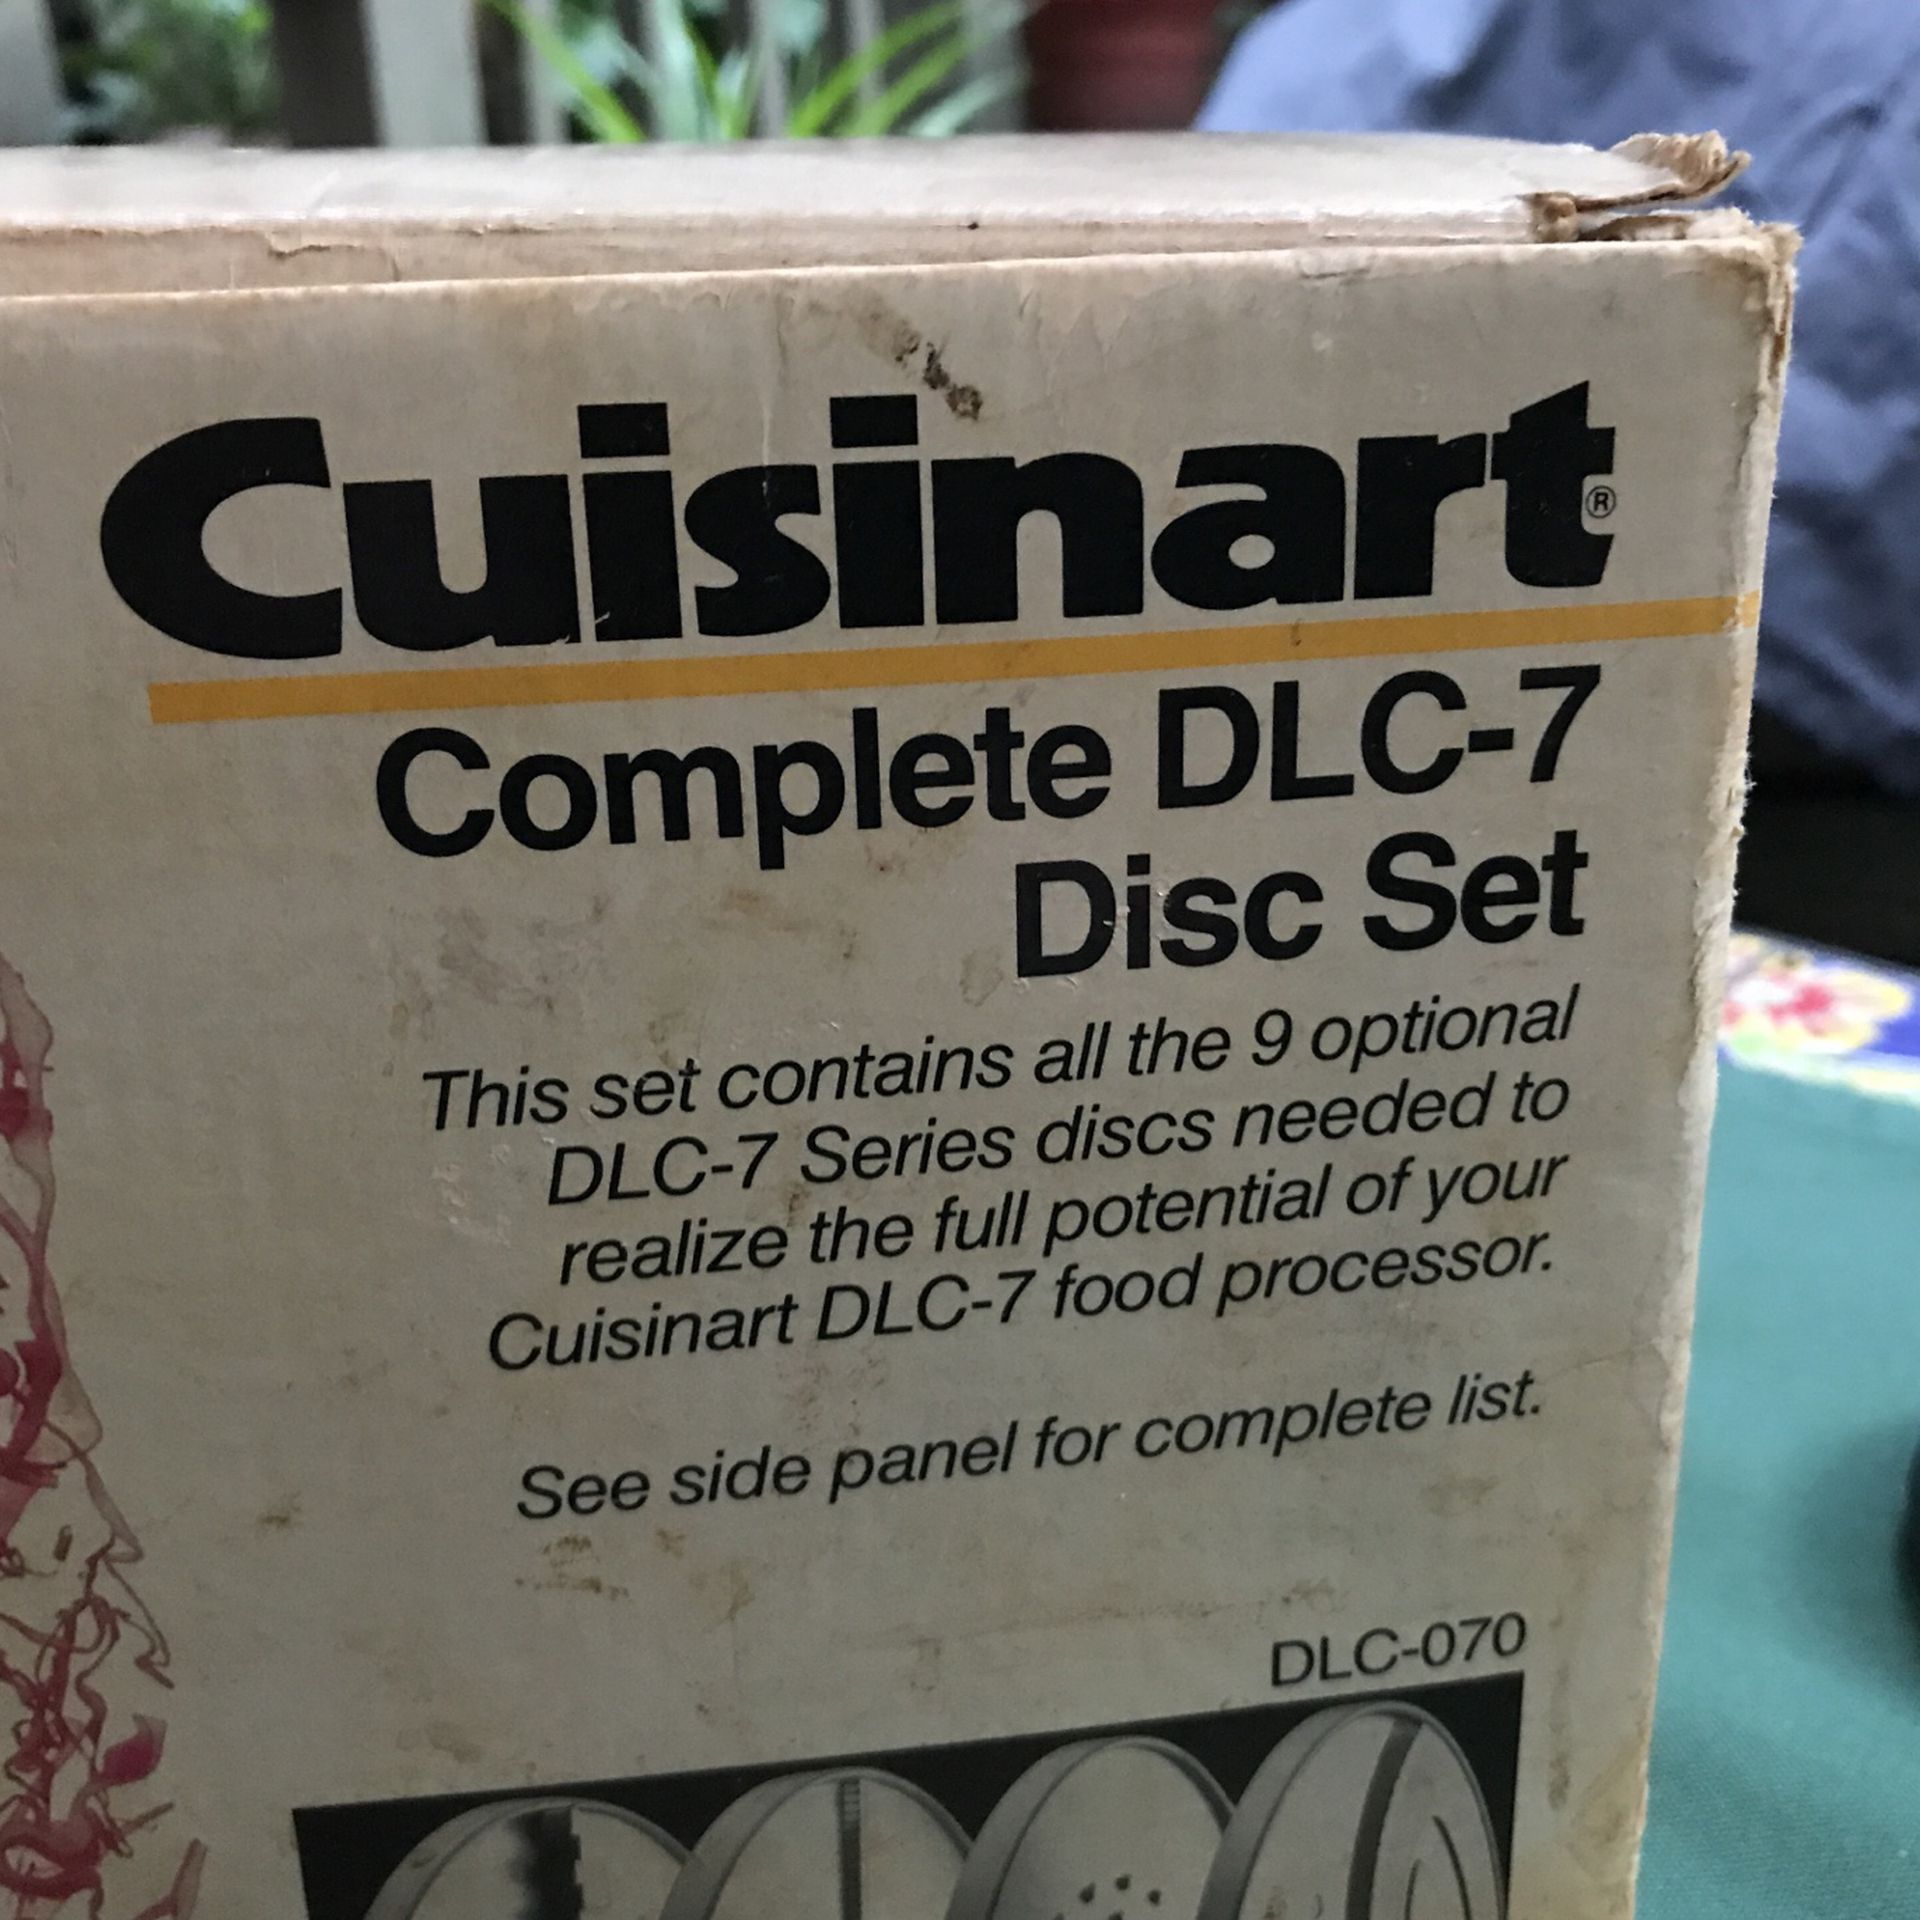 Cuisinart DLC-7 Disc Set